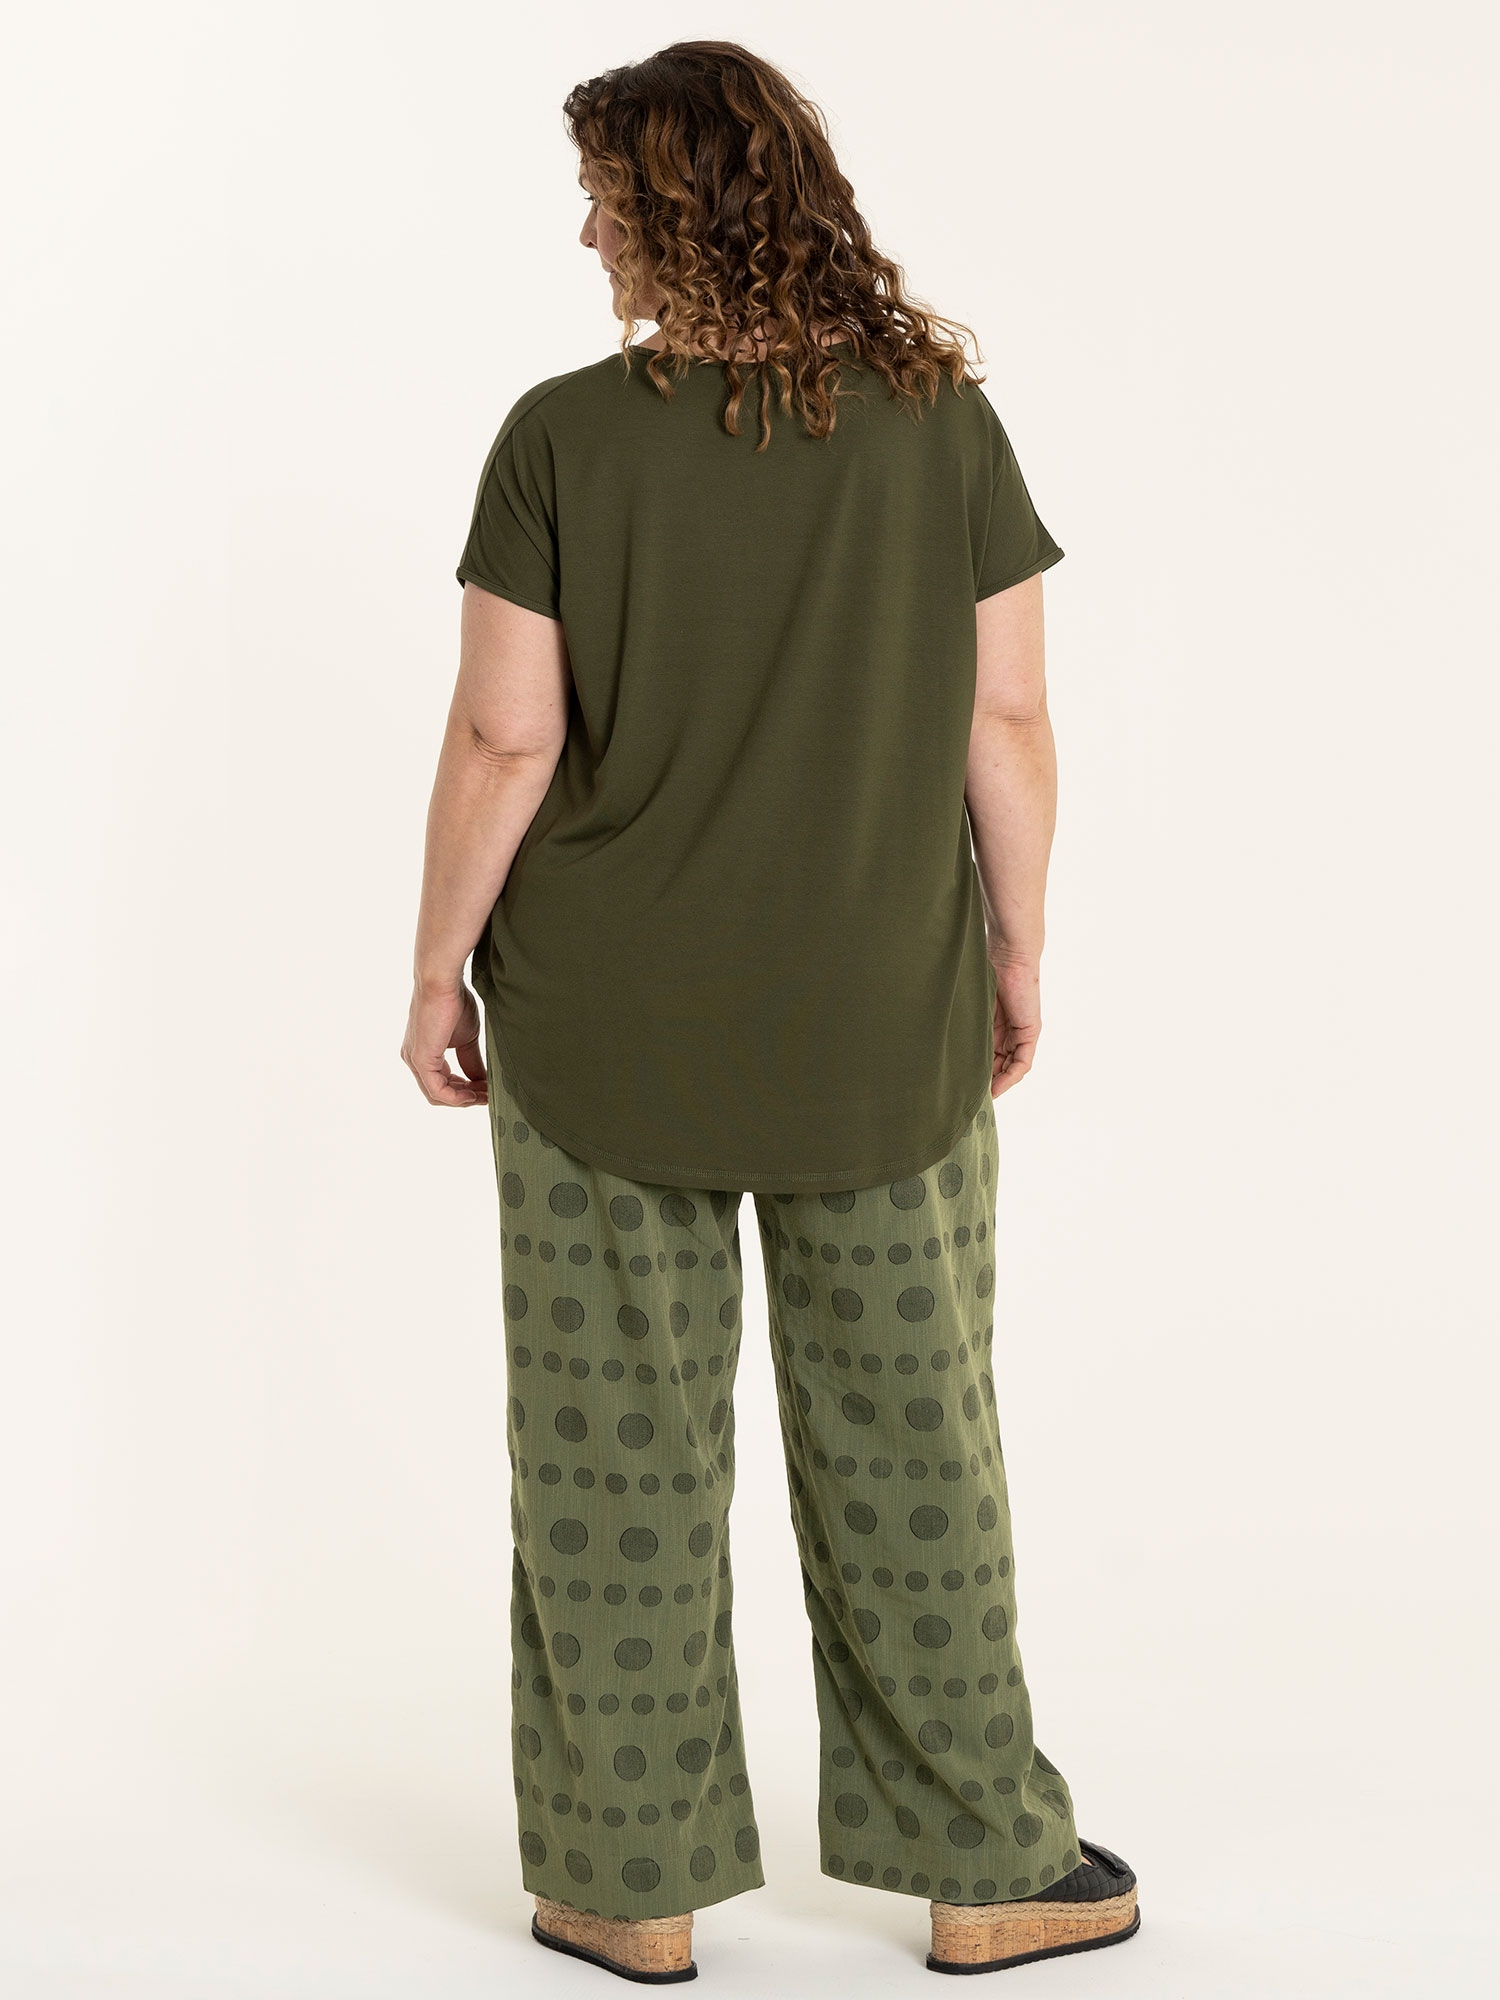 MARGRETHE - Army grønne bukser med brede ben og smukt cirkel mønster fra Gozzip